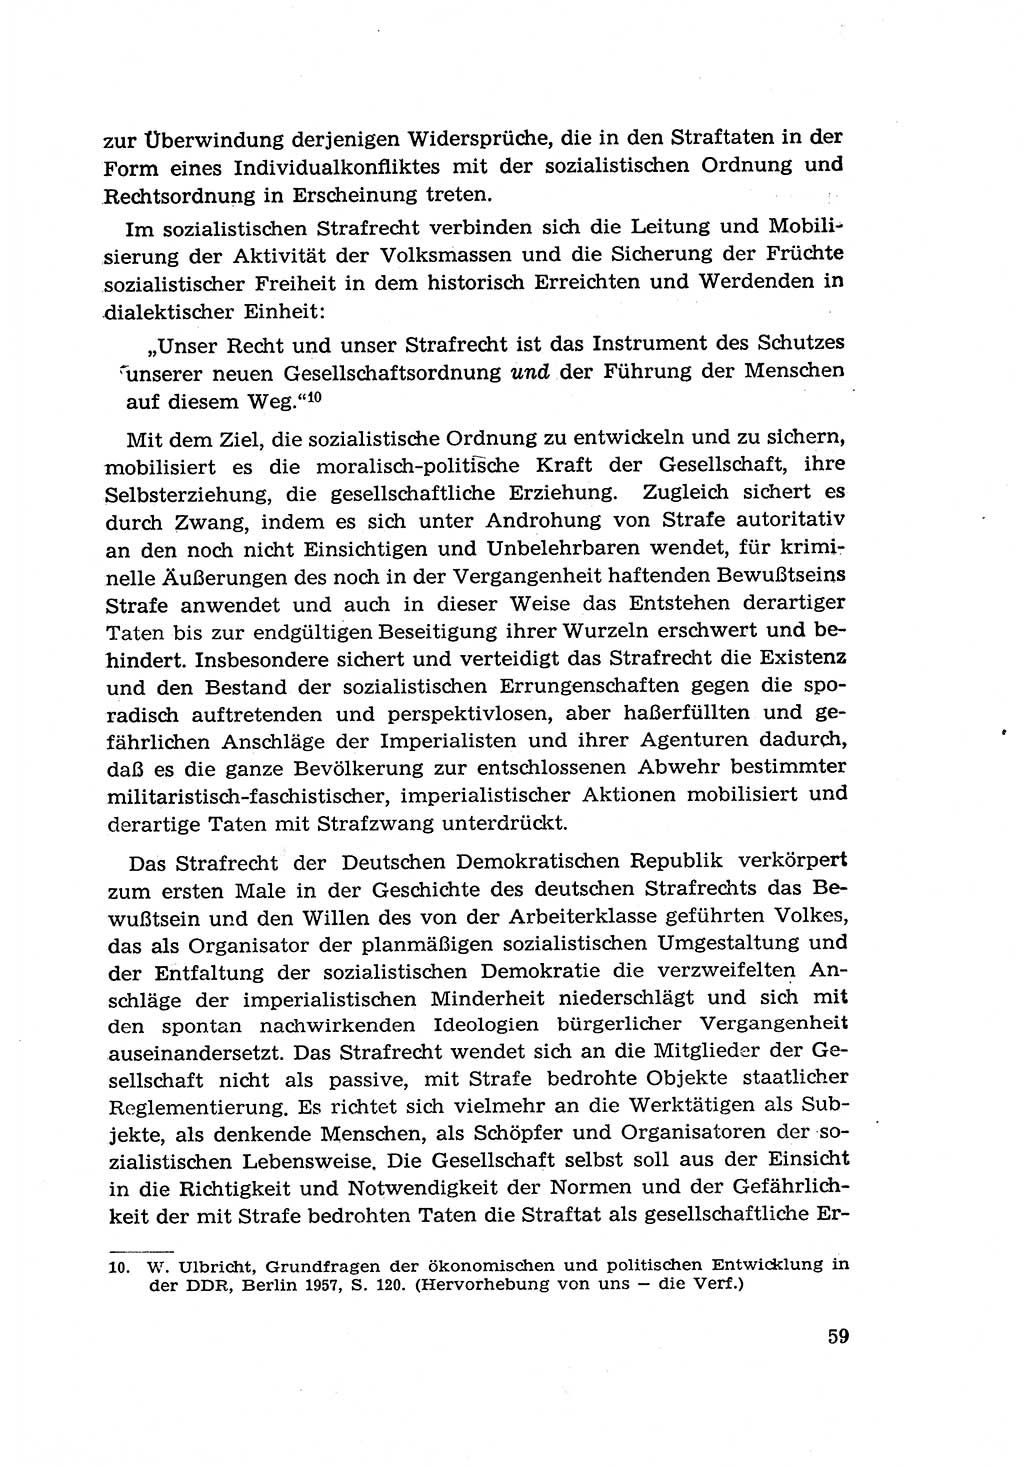 Zur Entwicklung des sozialistischen Strafrechts der Deutschen Demokratischen Republik (DDR) 1960, Seite 59 (Entw. soz. Strafr. DDR 1960, S. 59)